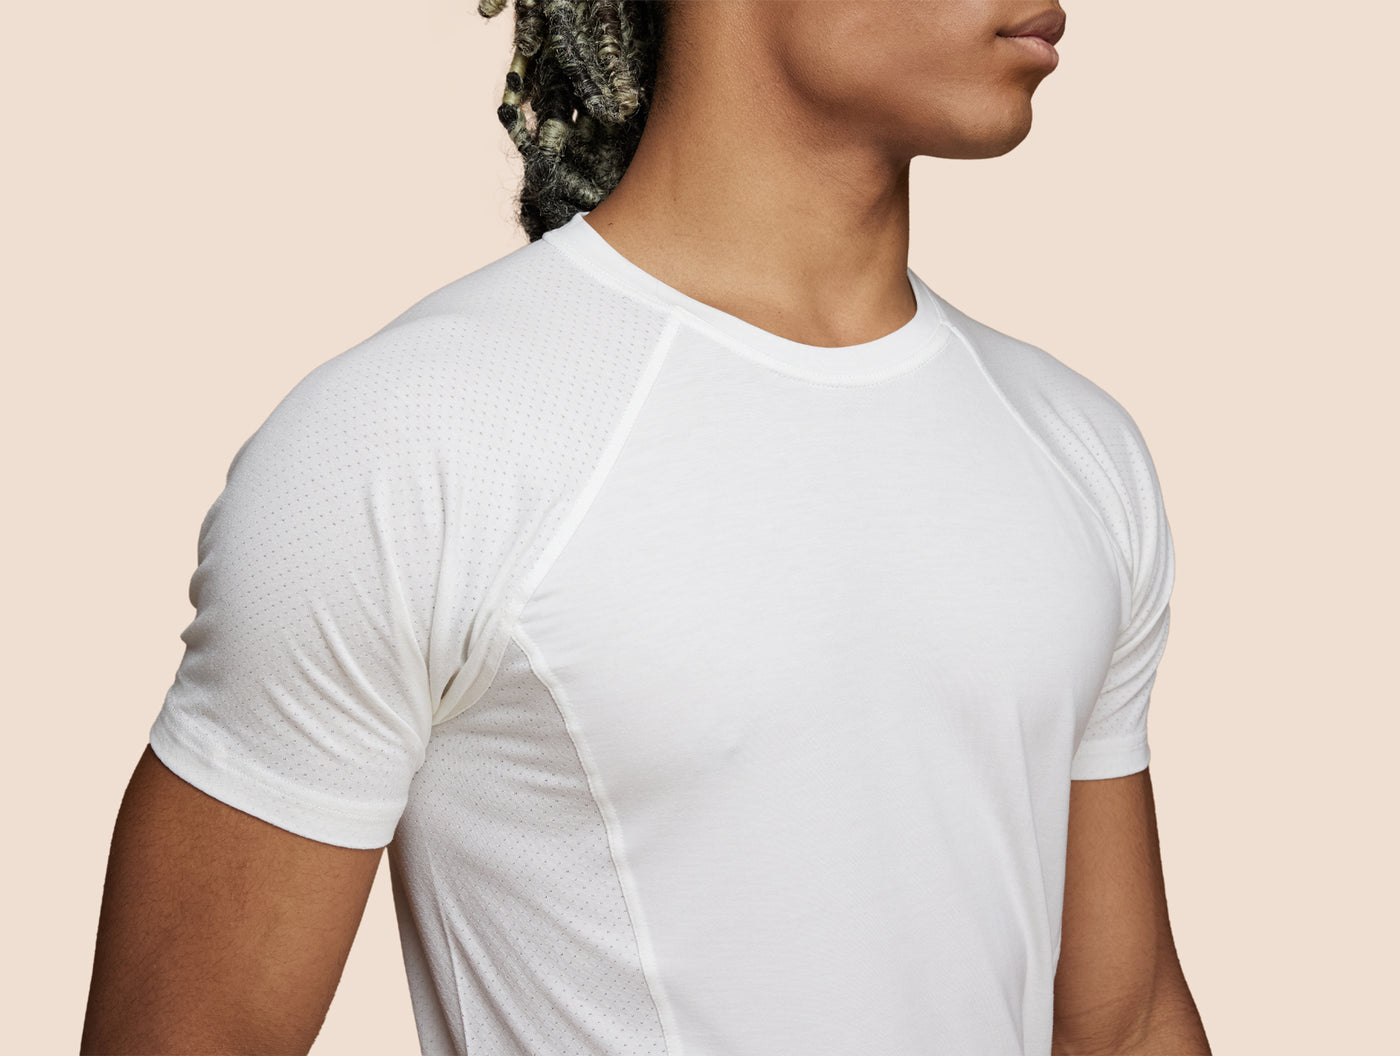 Pétrone T-shirt sport tencel blanc crème homme zoom#couleur_blanc-crème